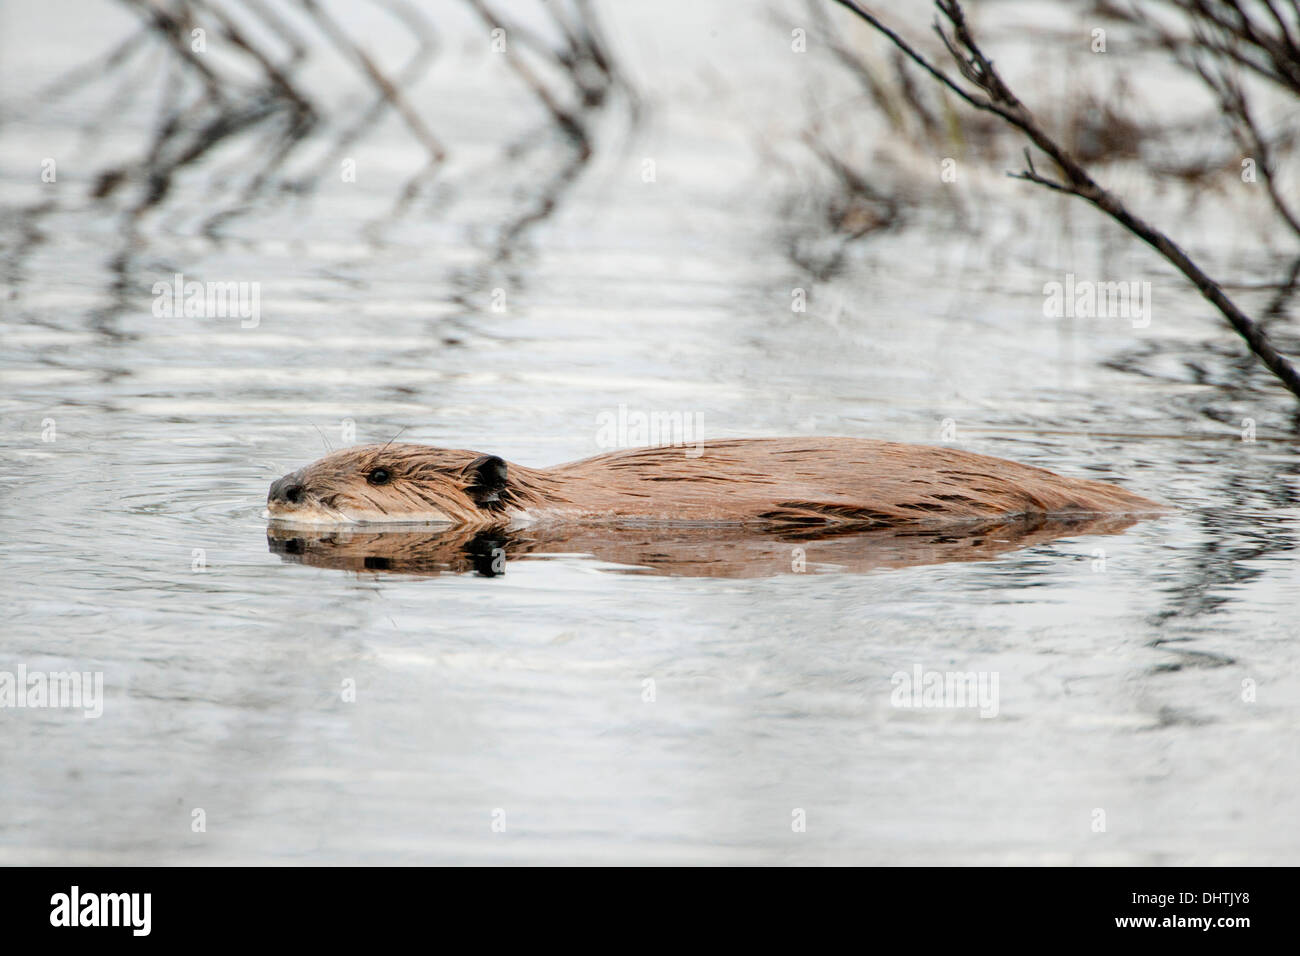 Netherlands, Werkendam, Biesbosch National Park. Beaver Stock Photo